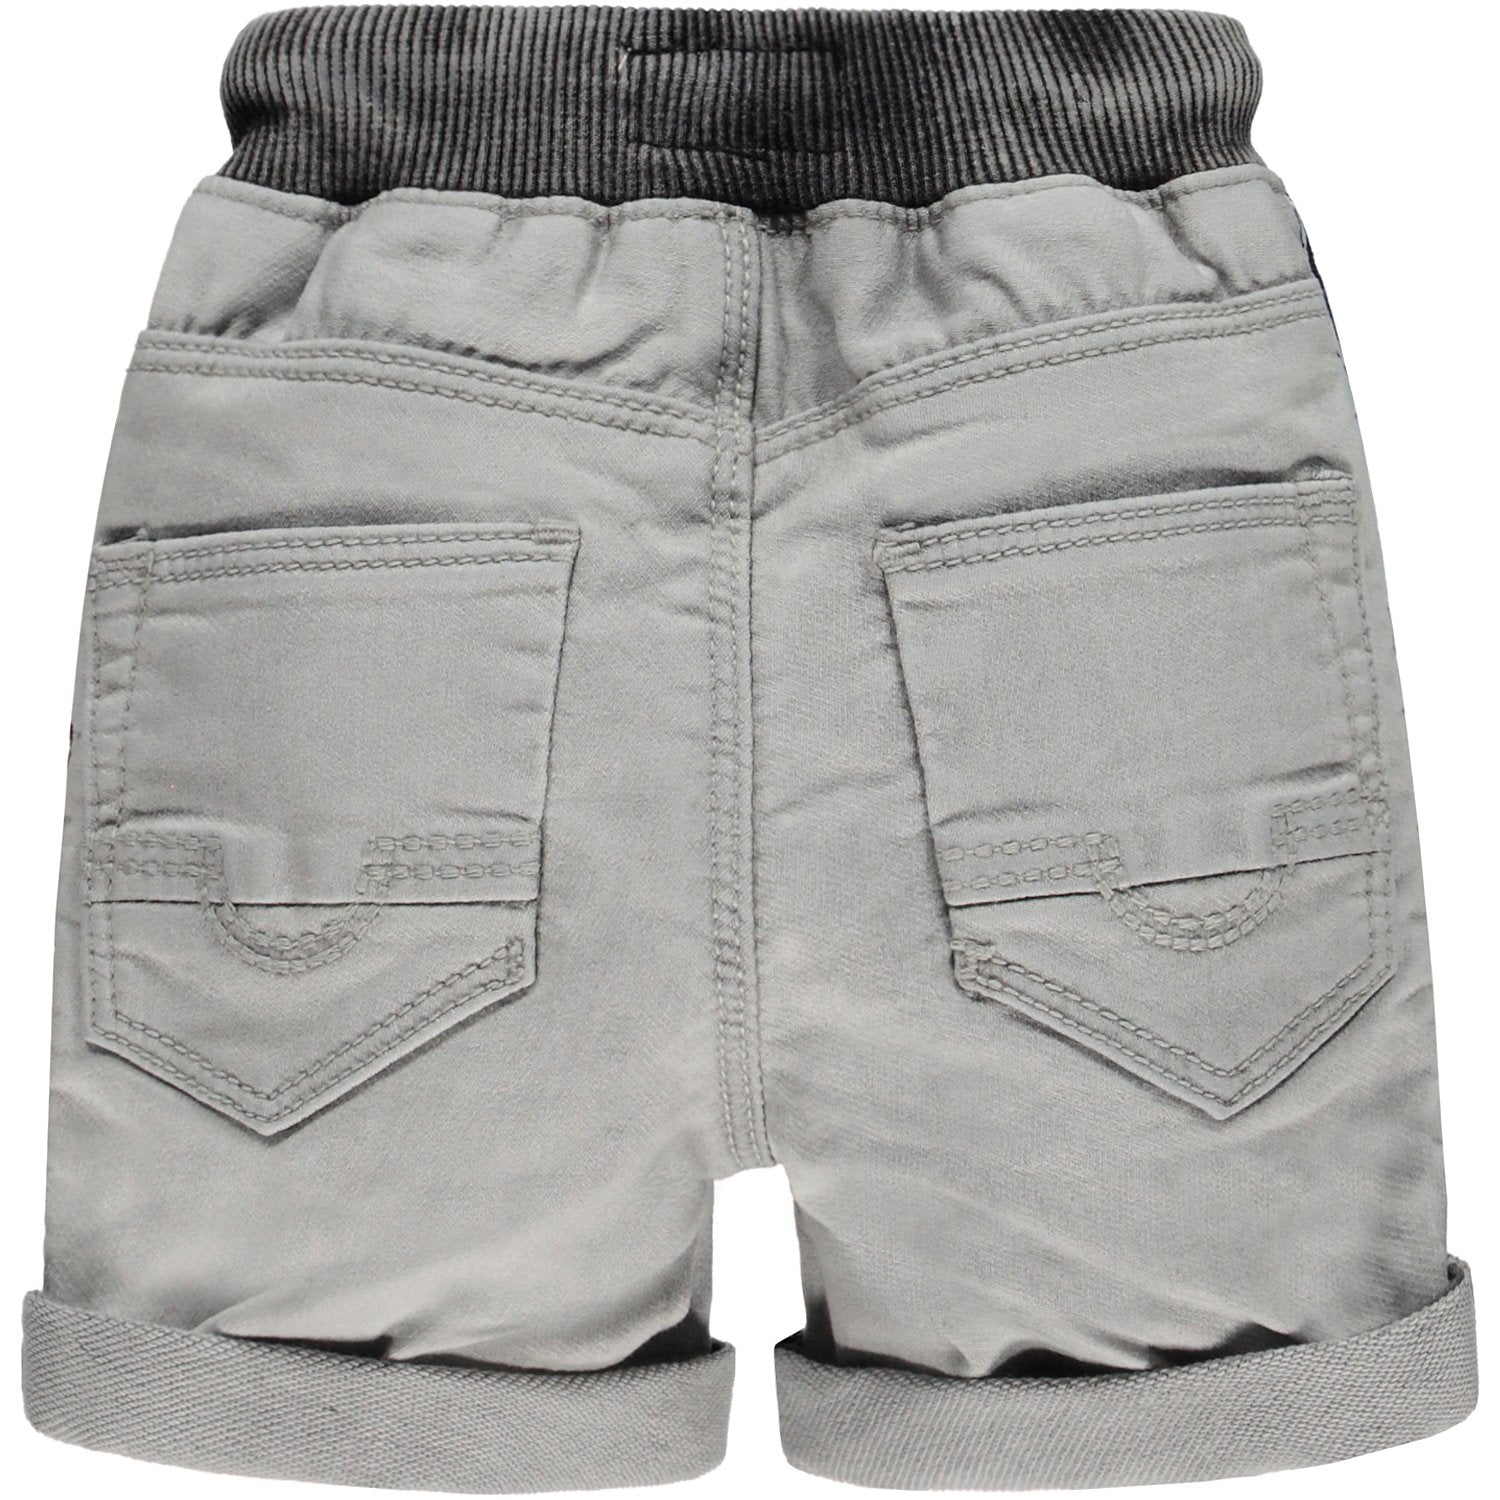 Baby Jongens Broek Jeans kort van Tumble 'n Dry in de kleur Denim grey in maat 86.